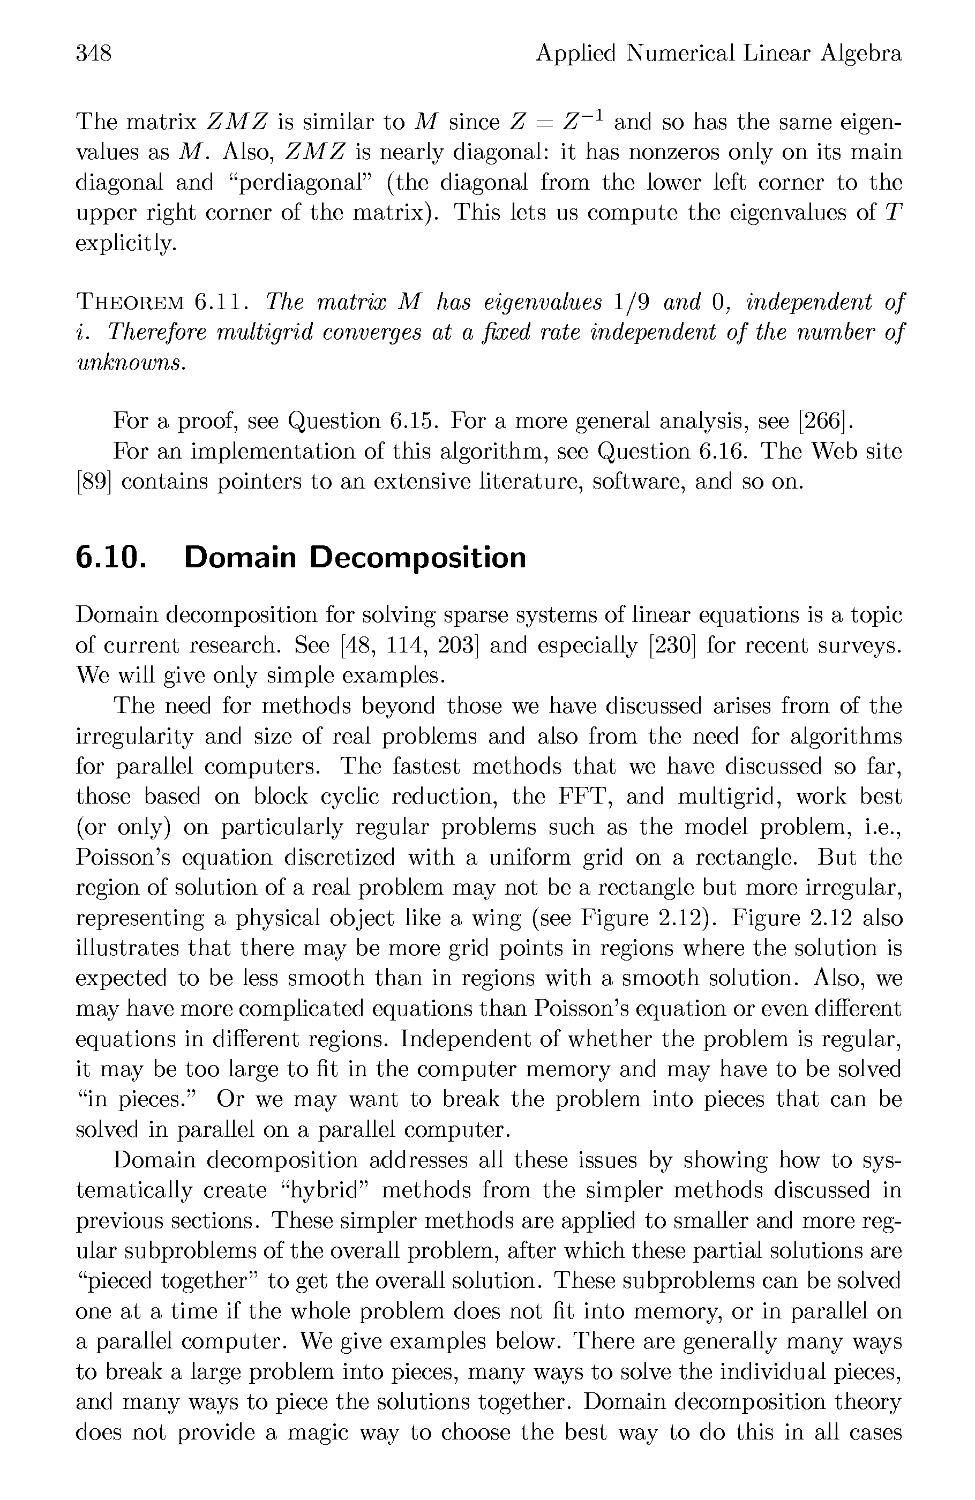 6.10 Domain Decomposition